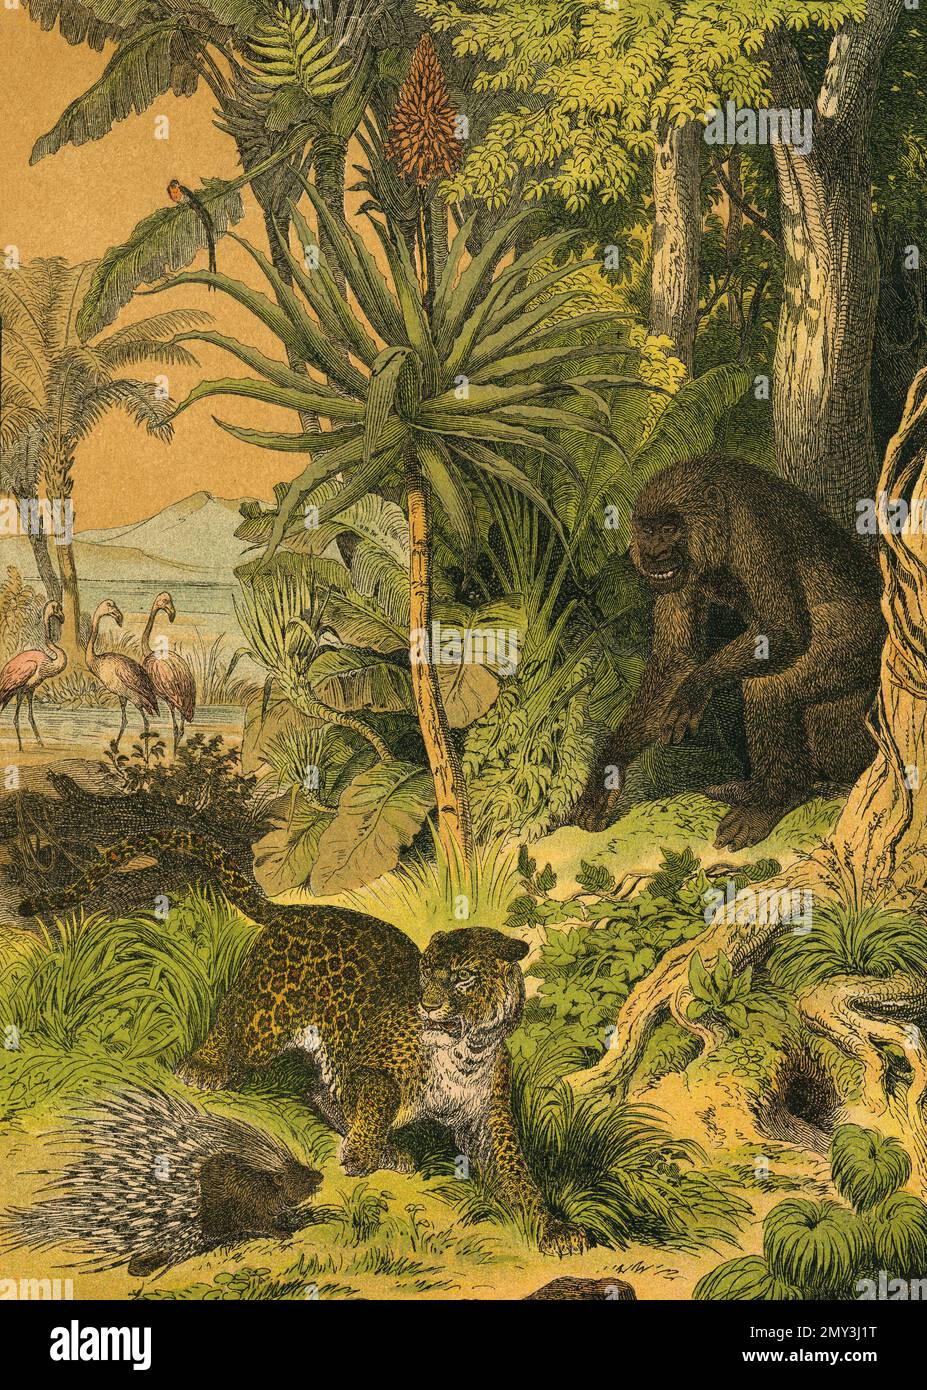 Tierwelt in Zentralafrika, Guinea: Gorilla, Leopard, Stachelschwein, Flamingo und Paradise Finch, Farbillustration, das lehrreiche Bilderbuch von Adam White, 1868 Stockfoto